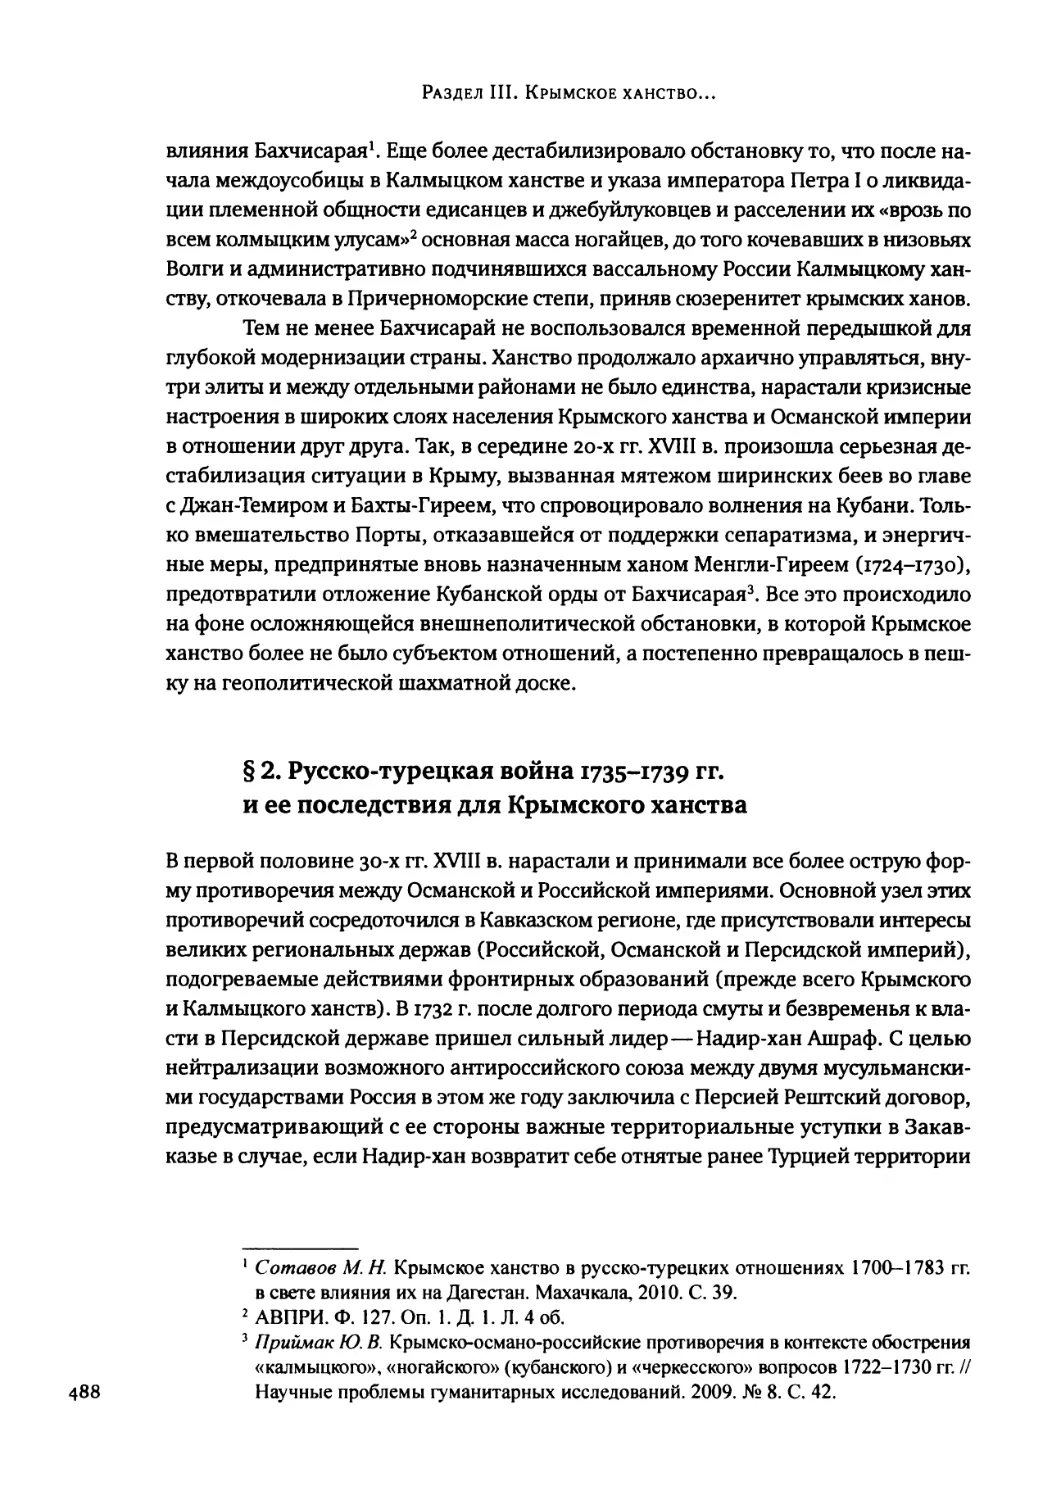 § 2. Русско-турецкая война 1735-1739 гг. и ее последствия для Крымского ханства